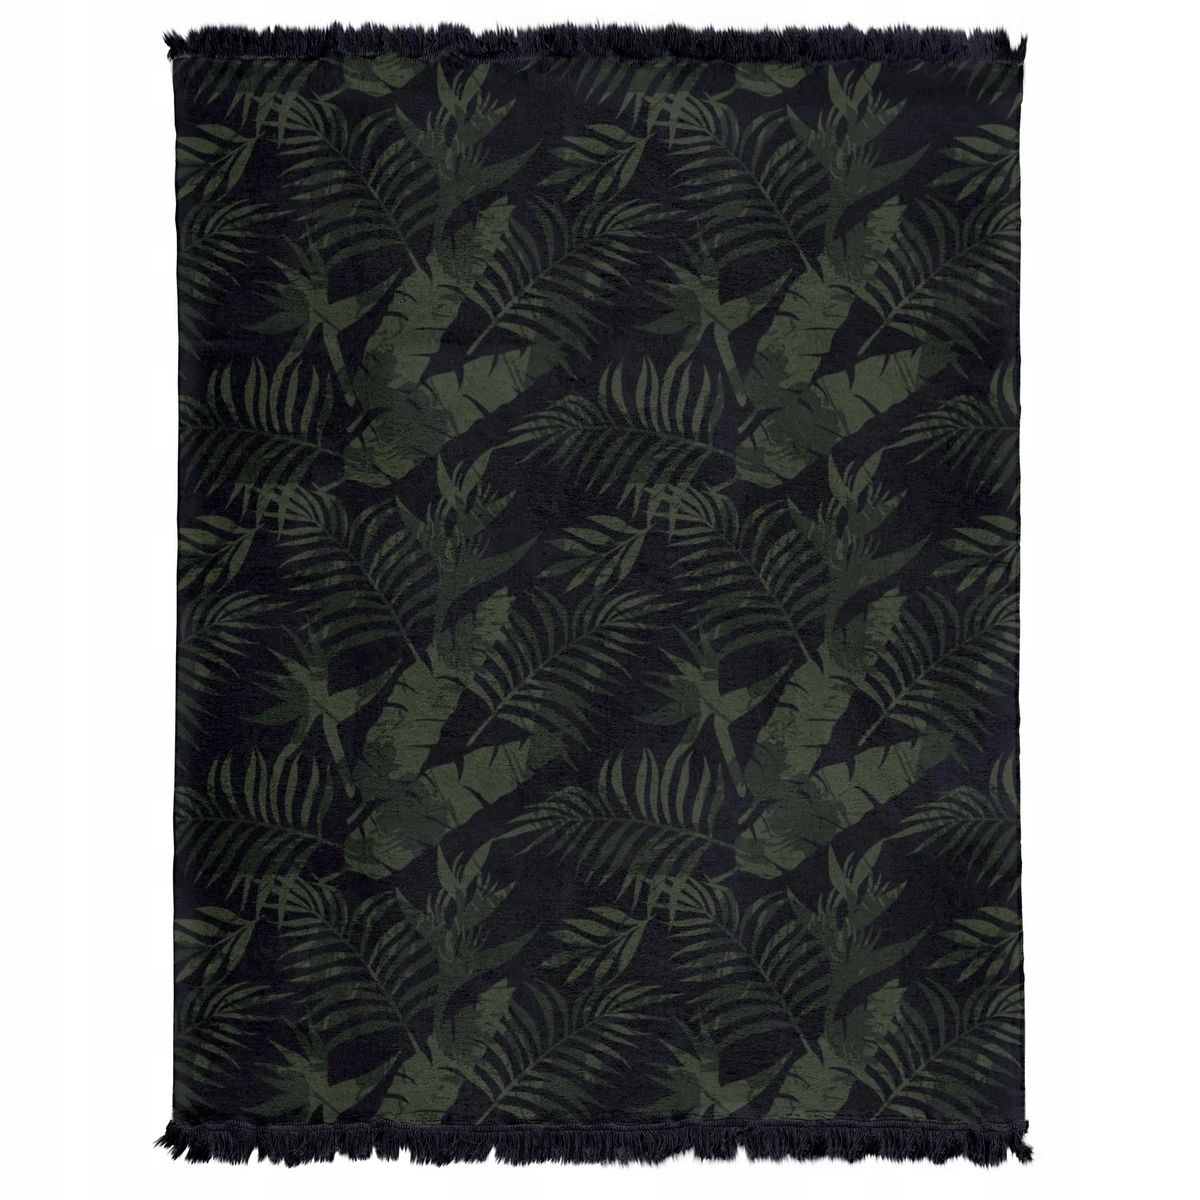 Koc bawełniany akrylowy 150x200 czarny zielony liście palmy z frędzlam